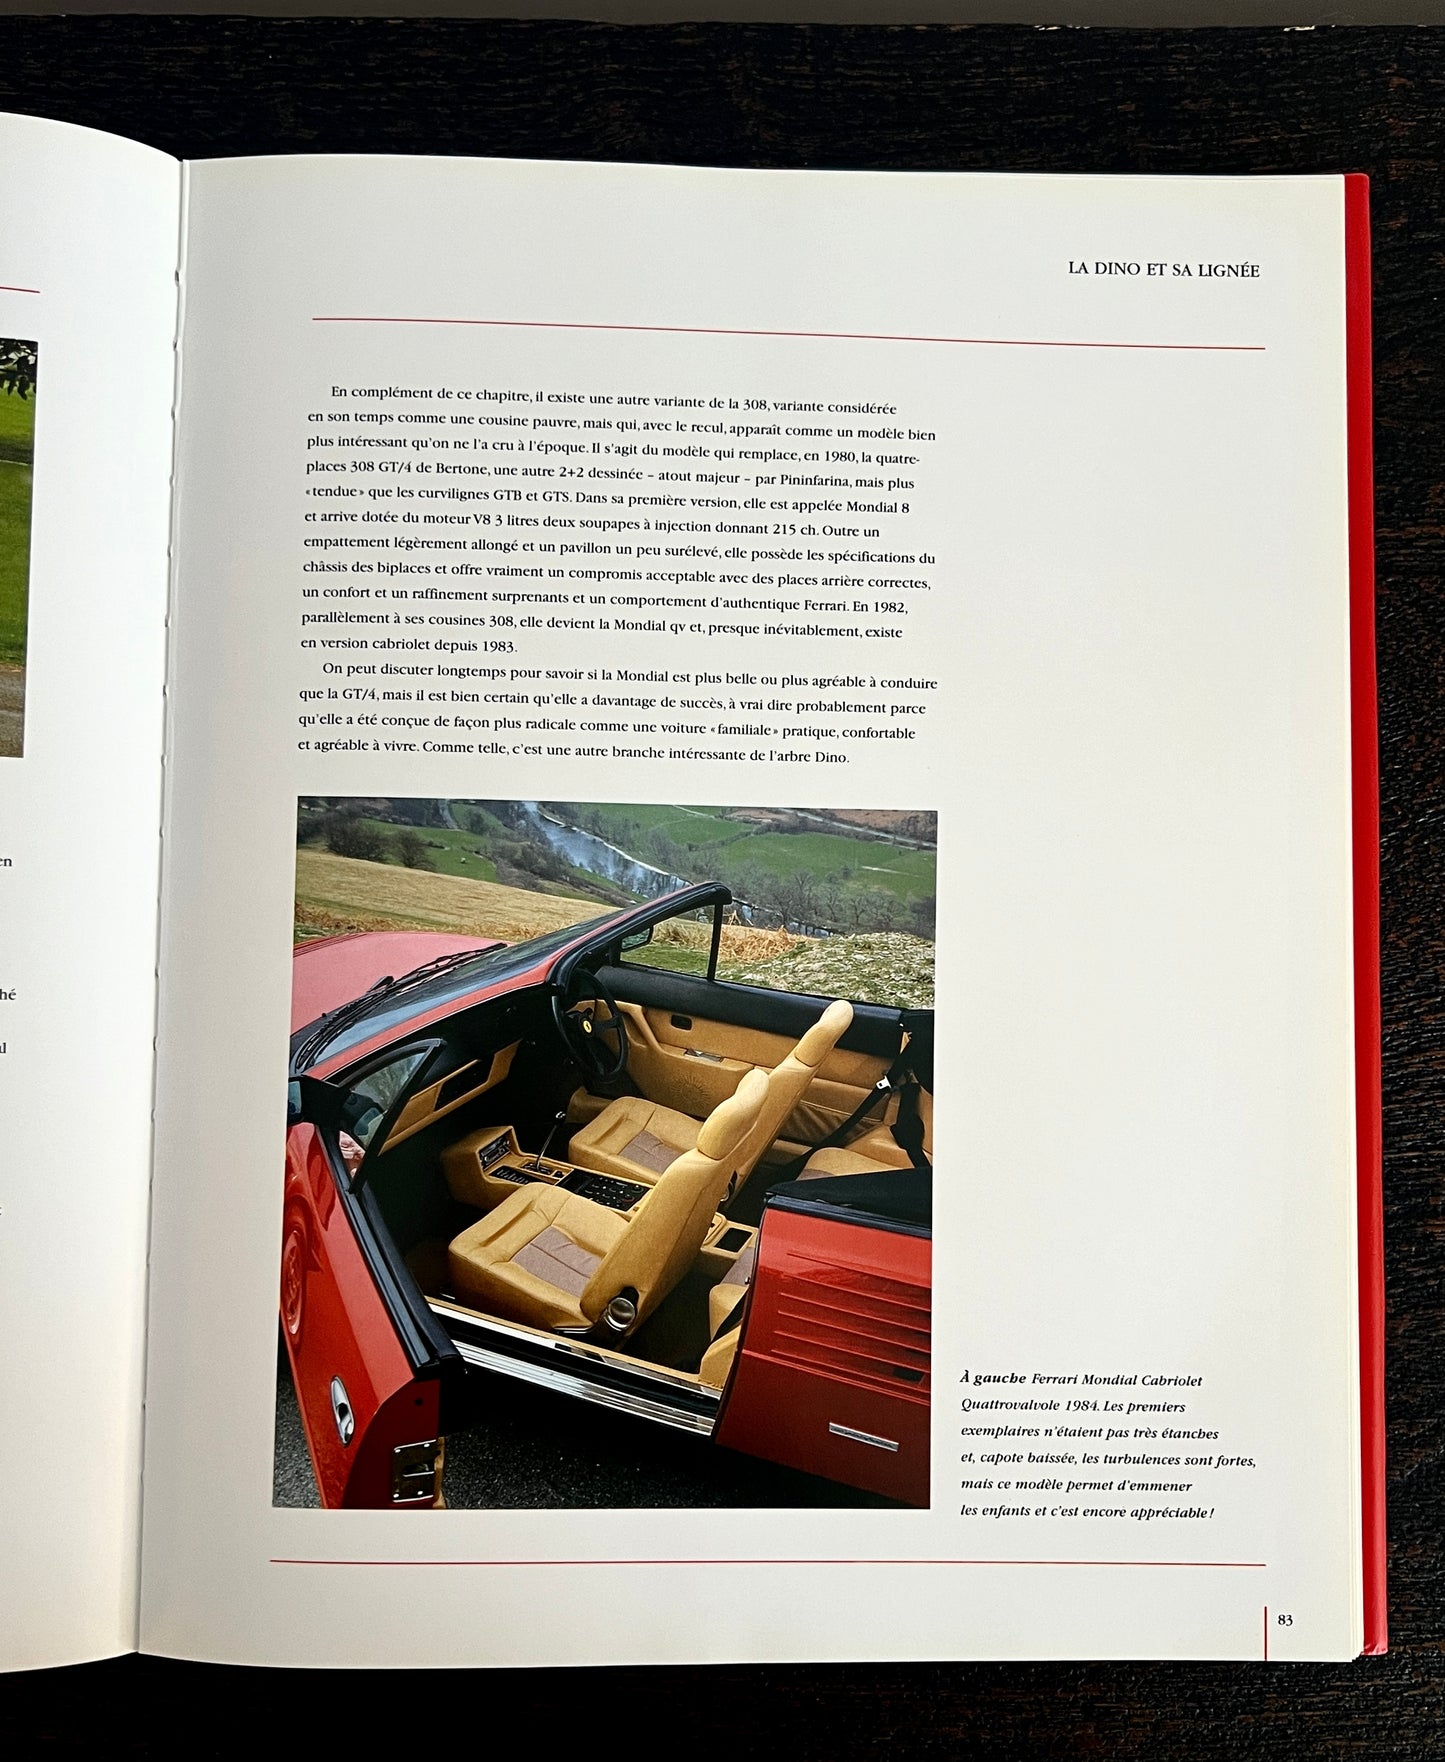 Ferrari - La fabuleuse histoire du cheval cabré by Stuart Gallagher and Helen Smith